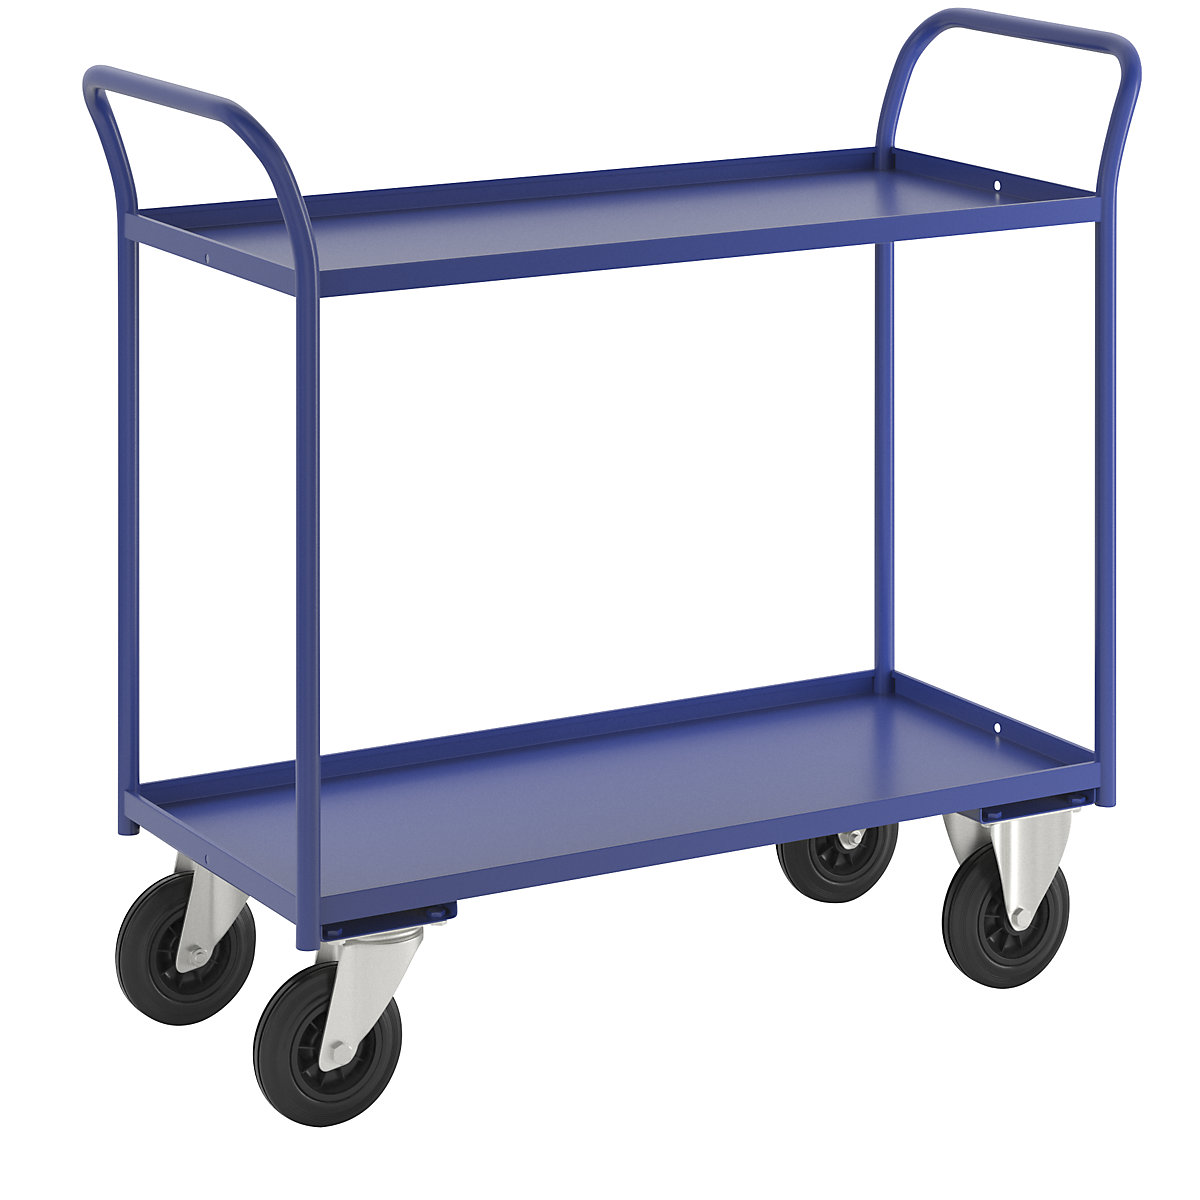 Stolový vozík KM41 – Kongamek, 2 etáže se zvýšenou hranou, d x š x v 1080 x 450 x 1000 mm, modrá, 2 otočná a 2 pevná kola-6